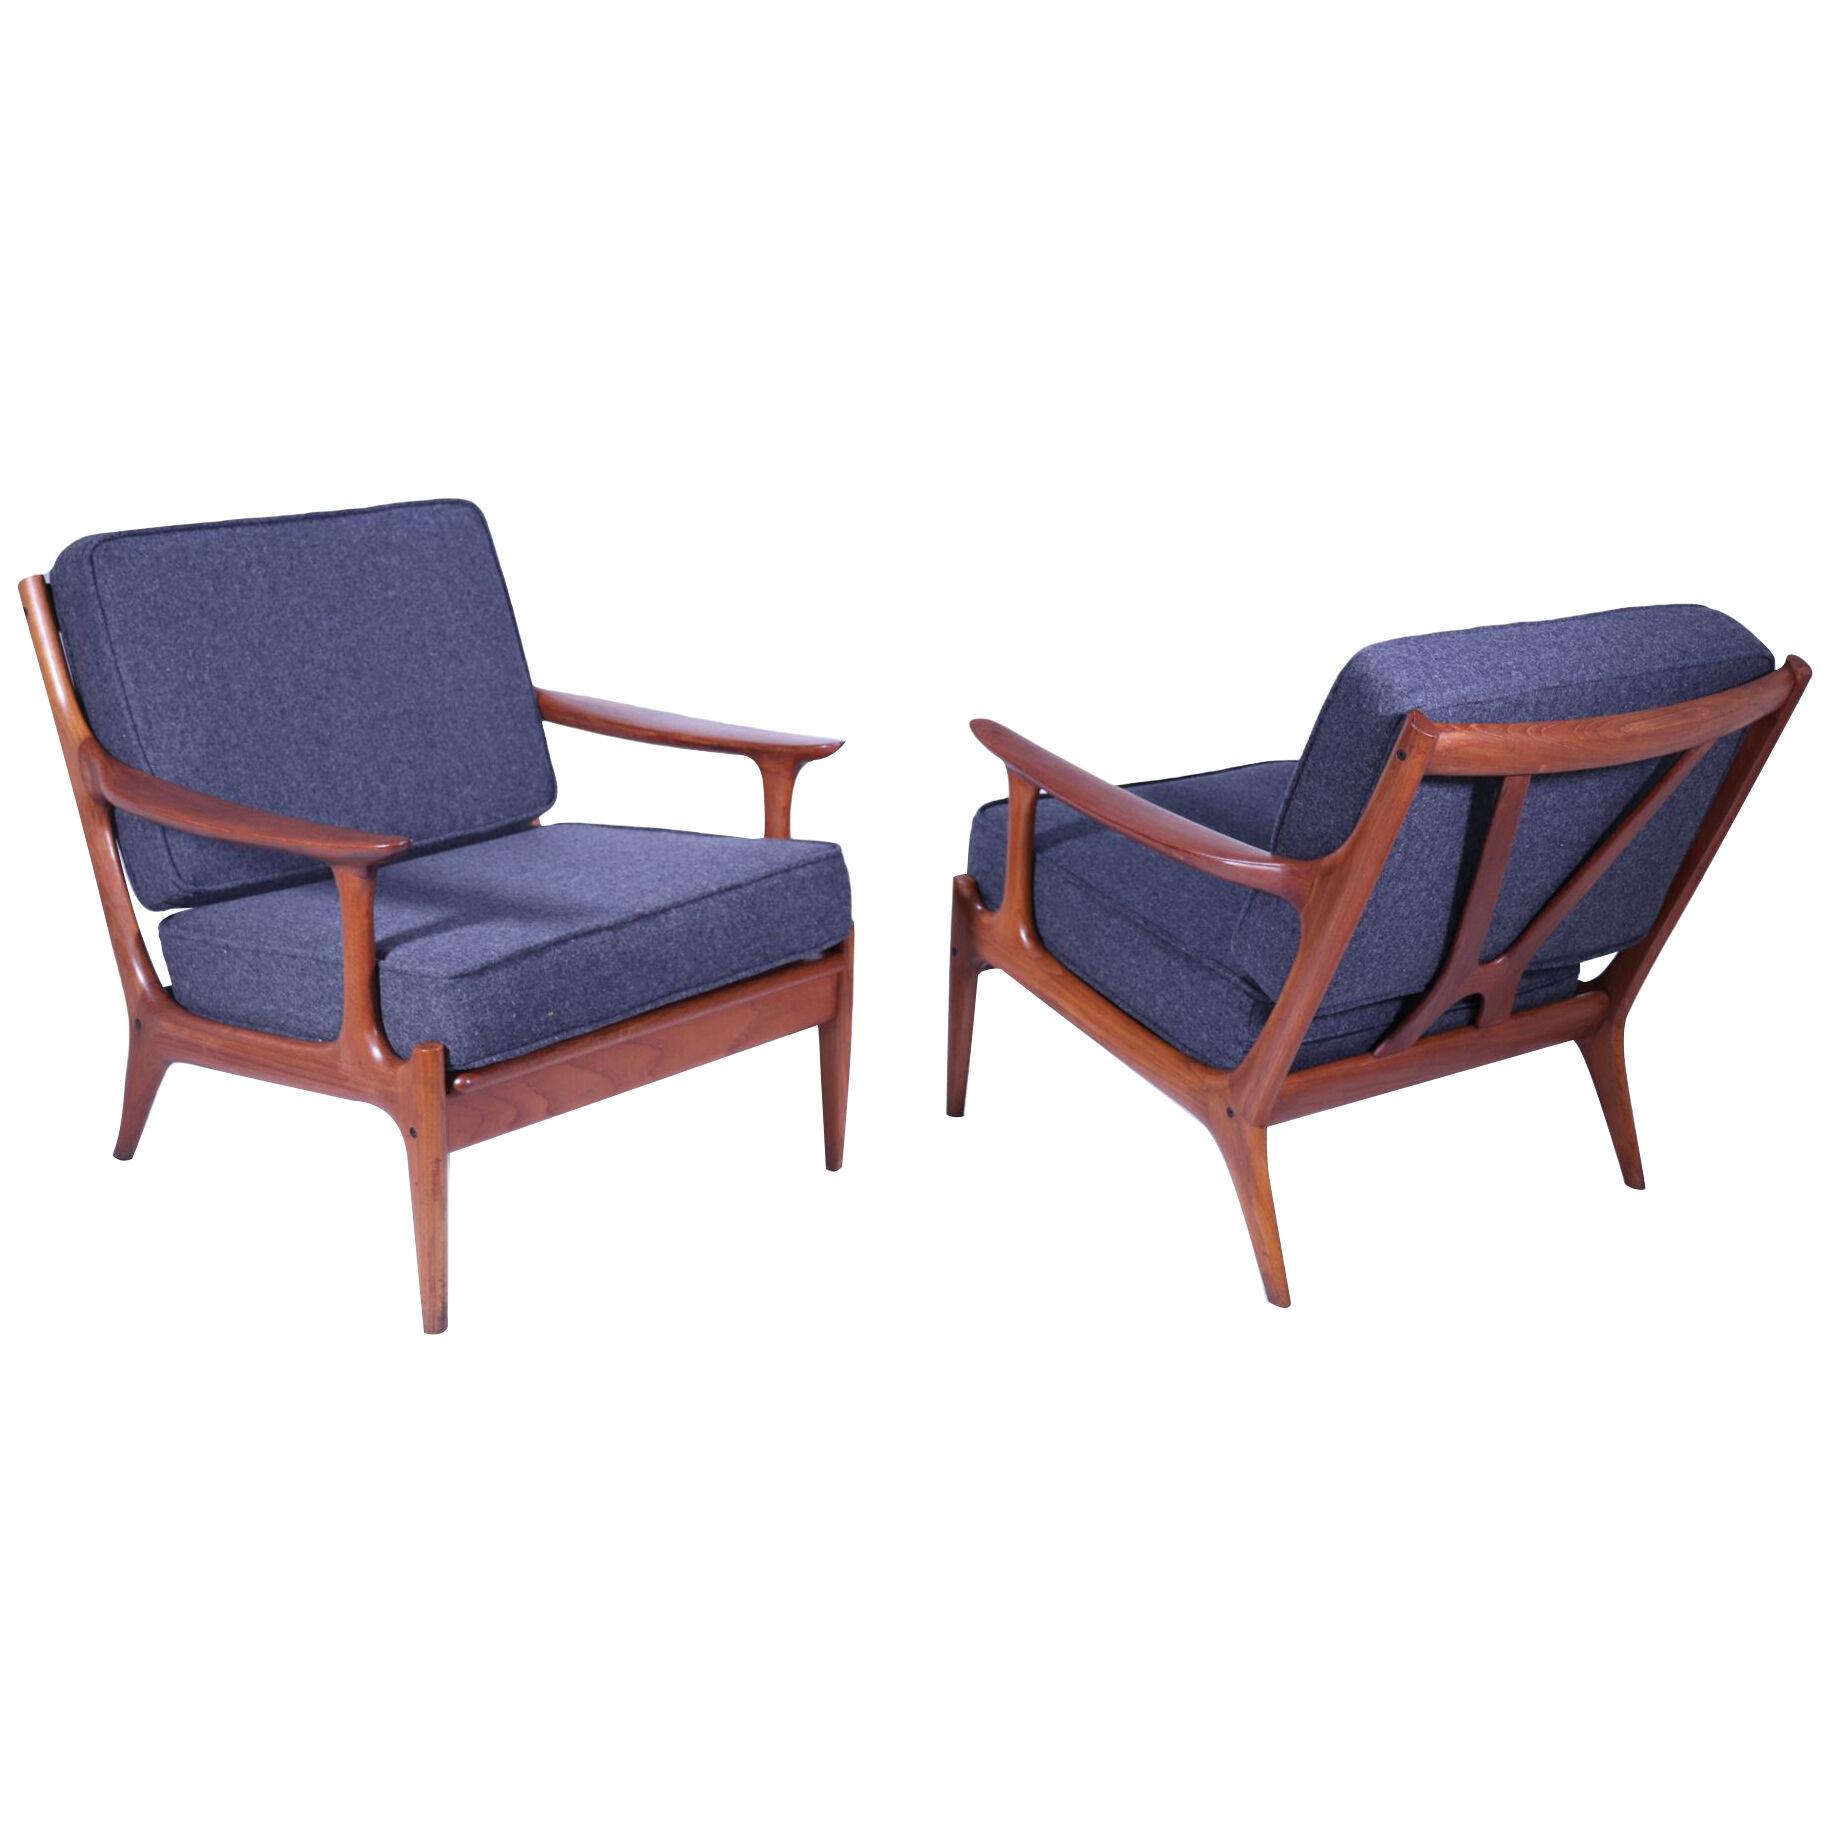 Pair of Danish Teak Lounge Chairs by Bramin c1960